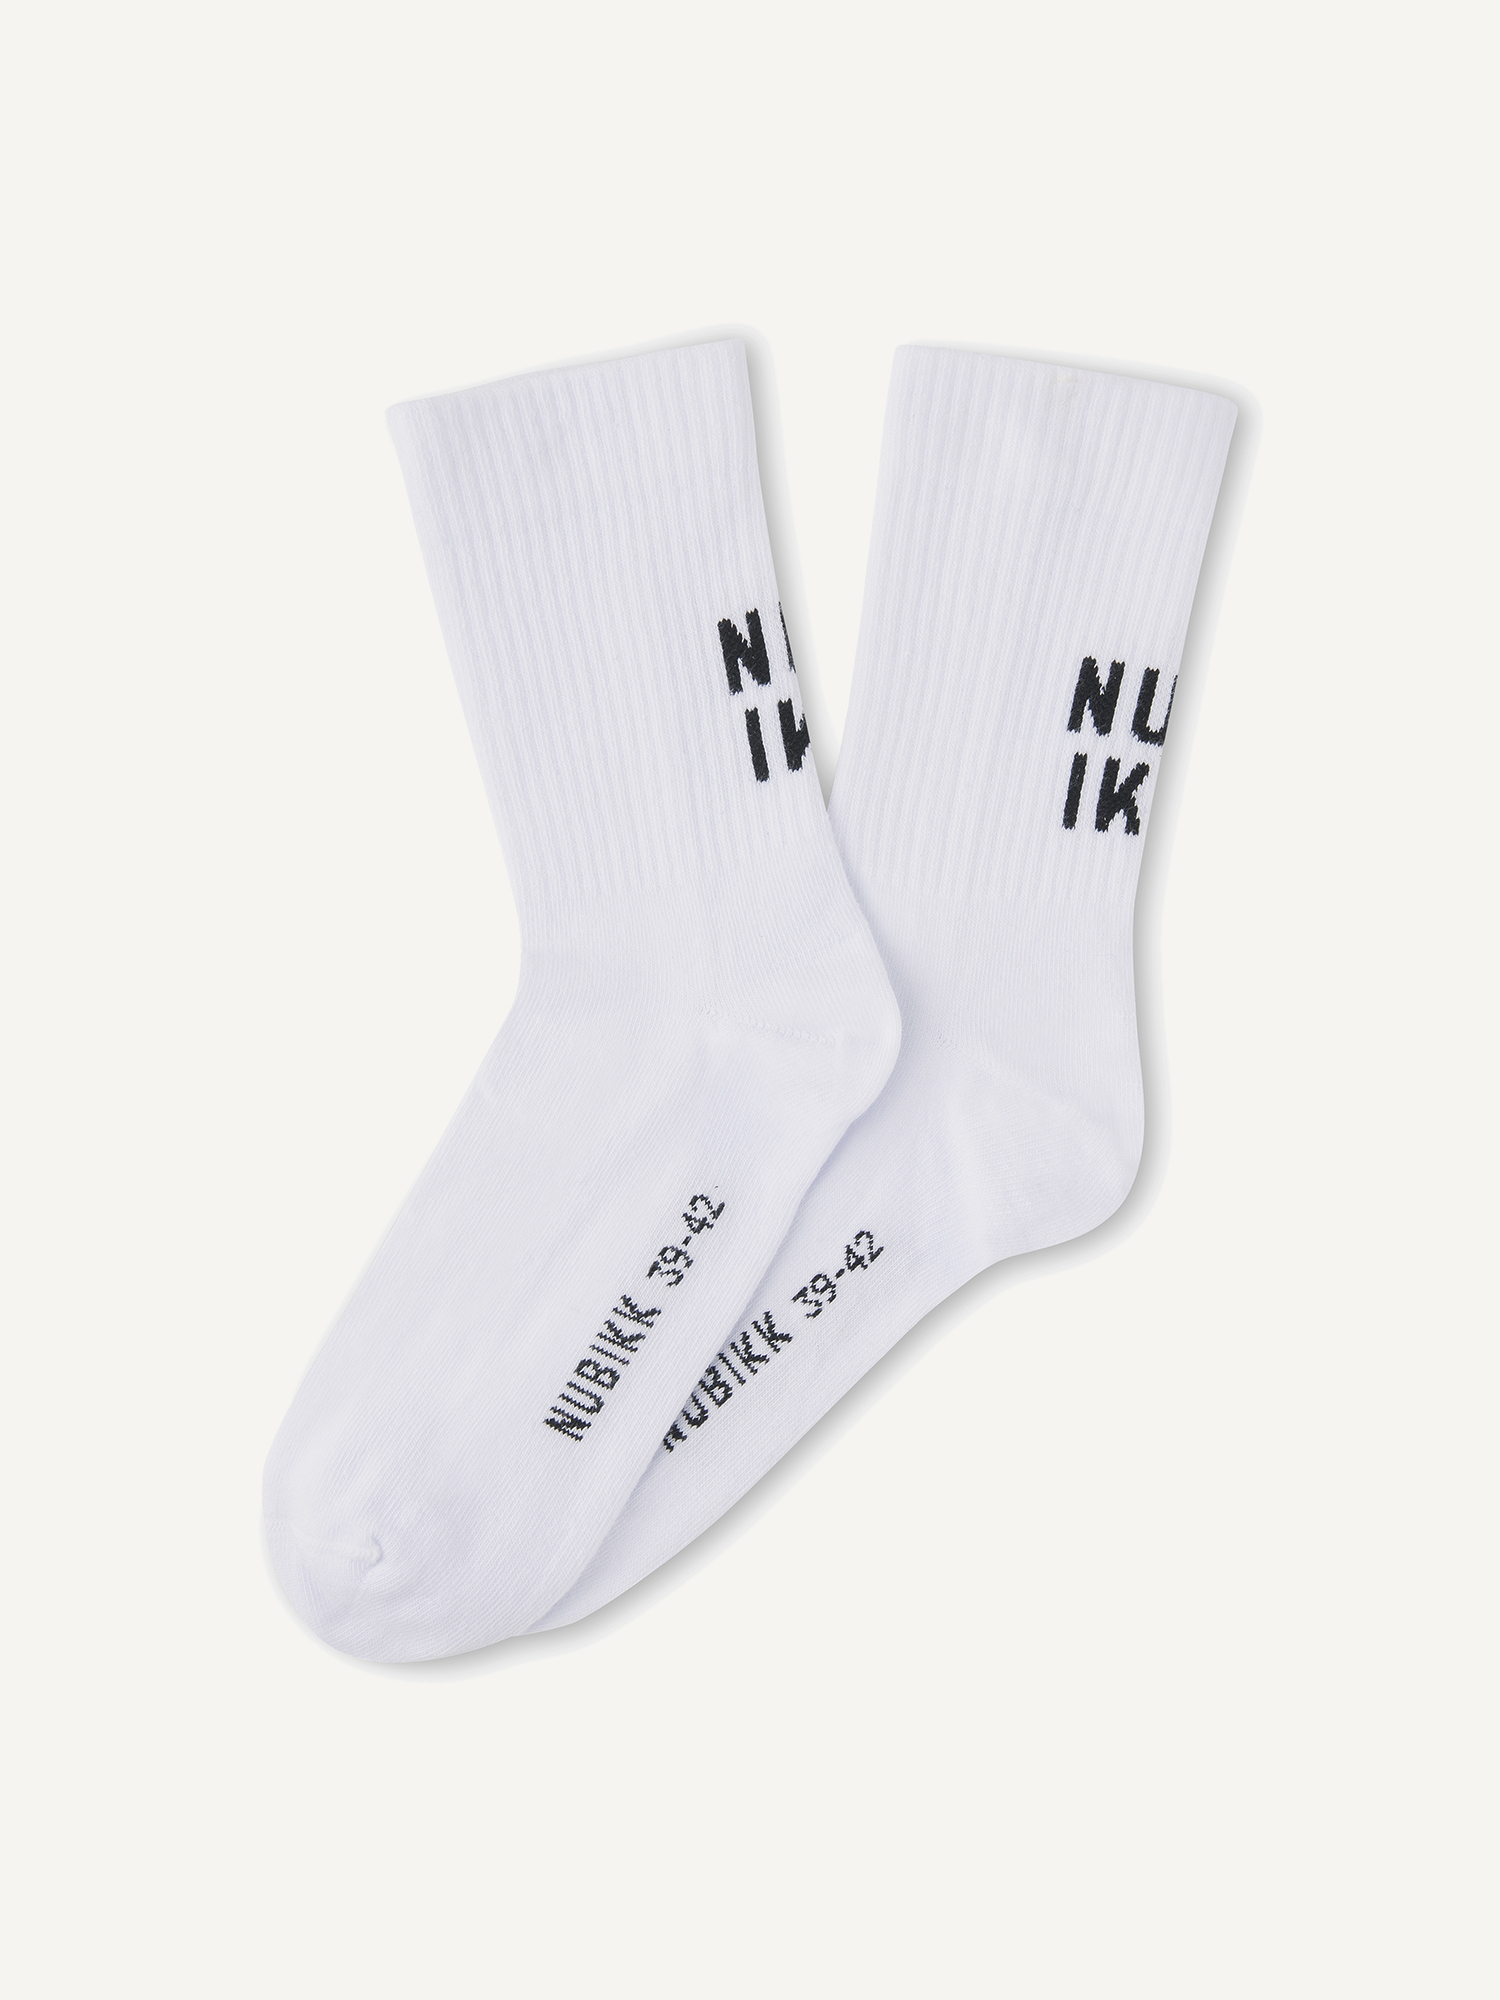 Nova Socks | White socks for women